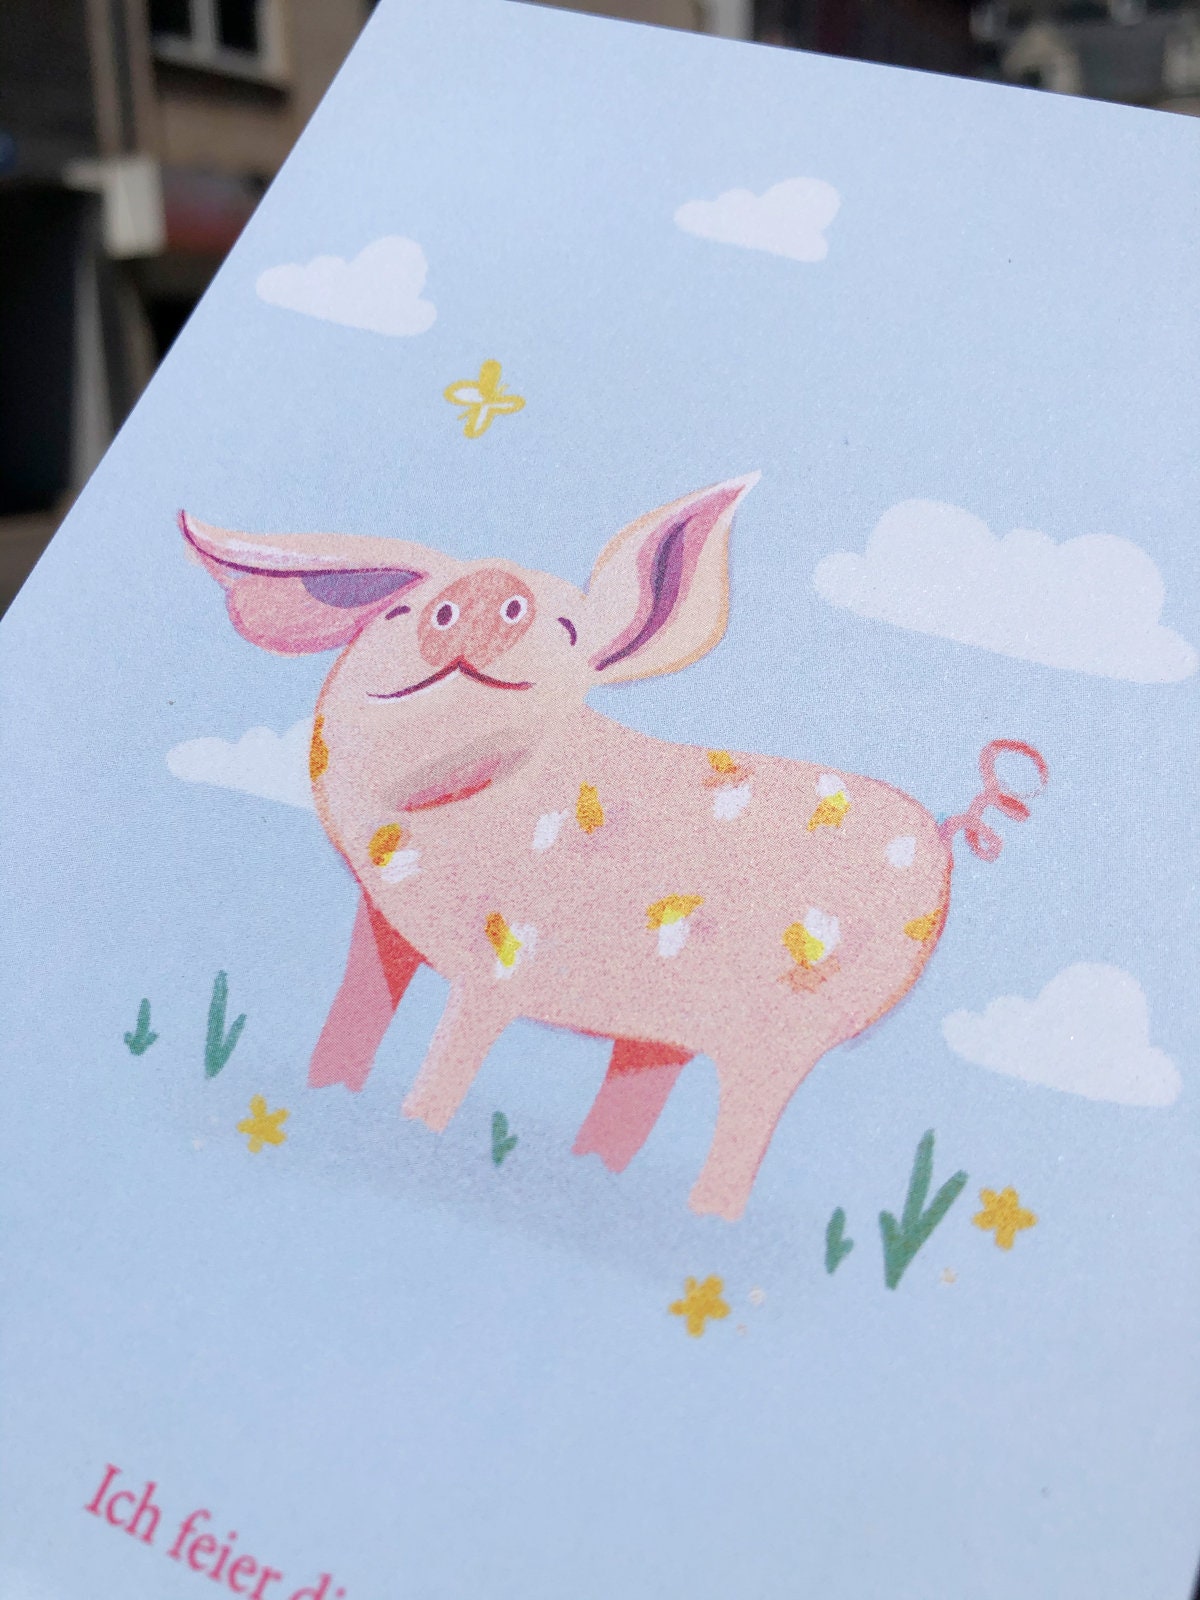 Postkarte Schwein "Ich feier dich!"